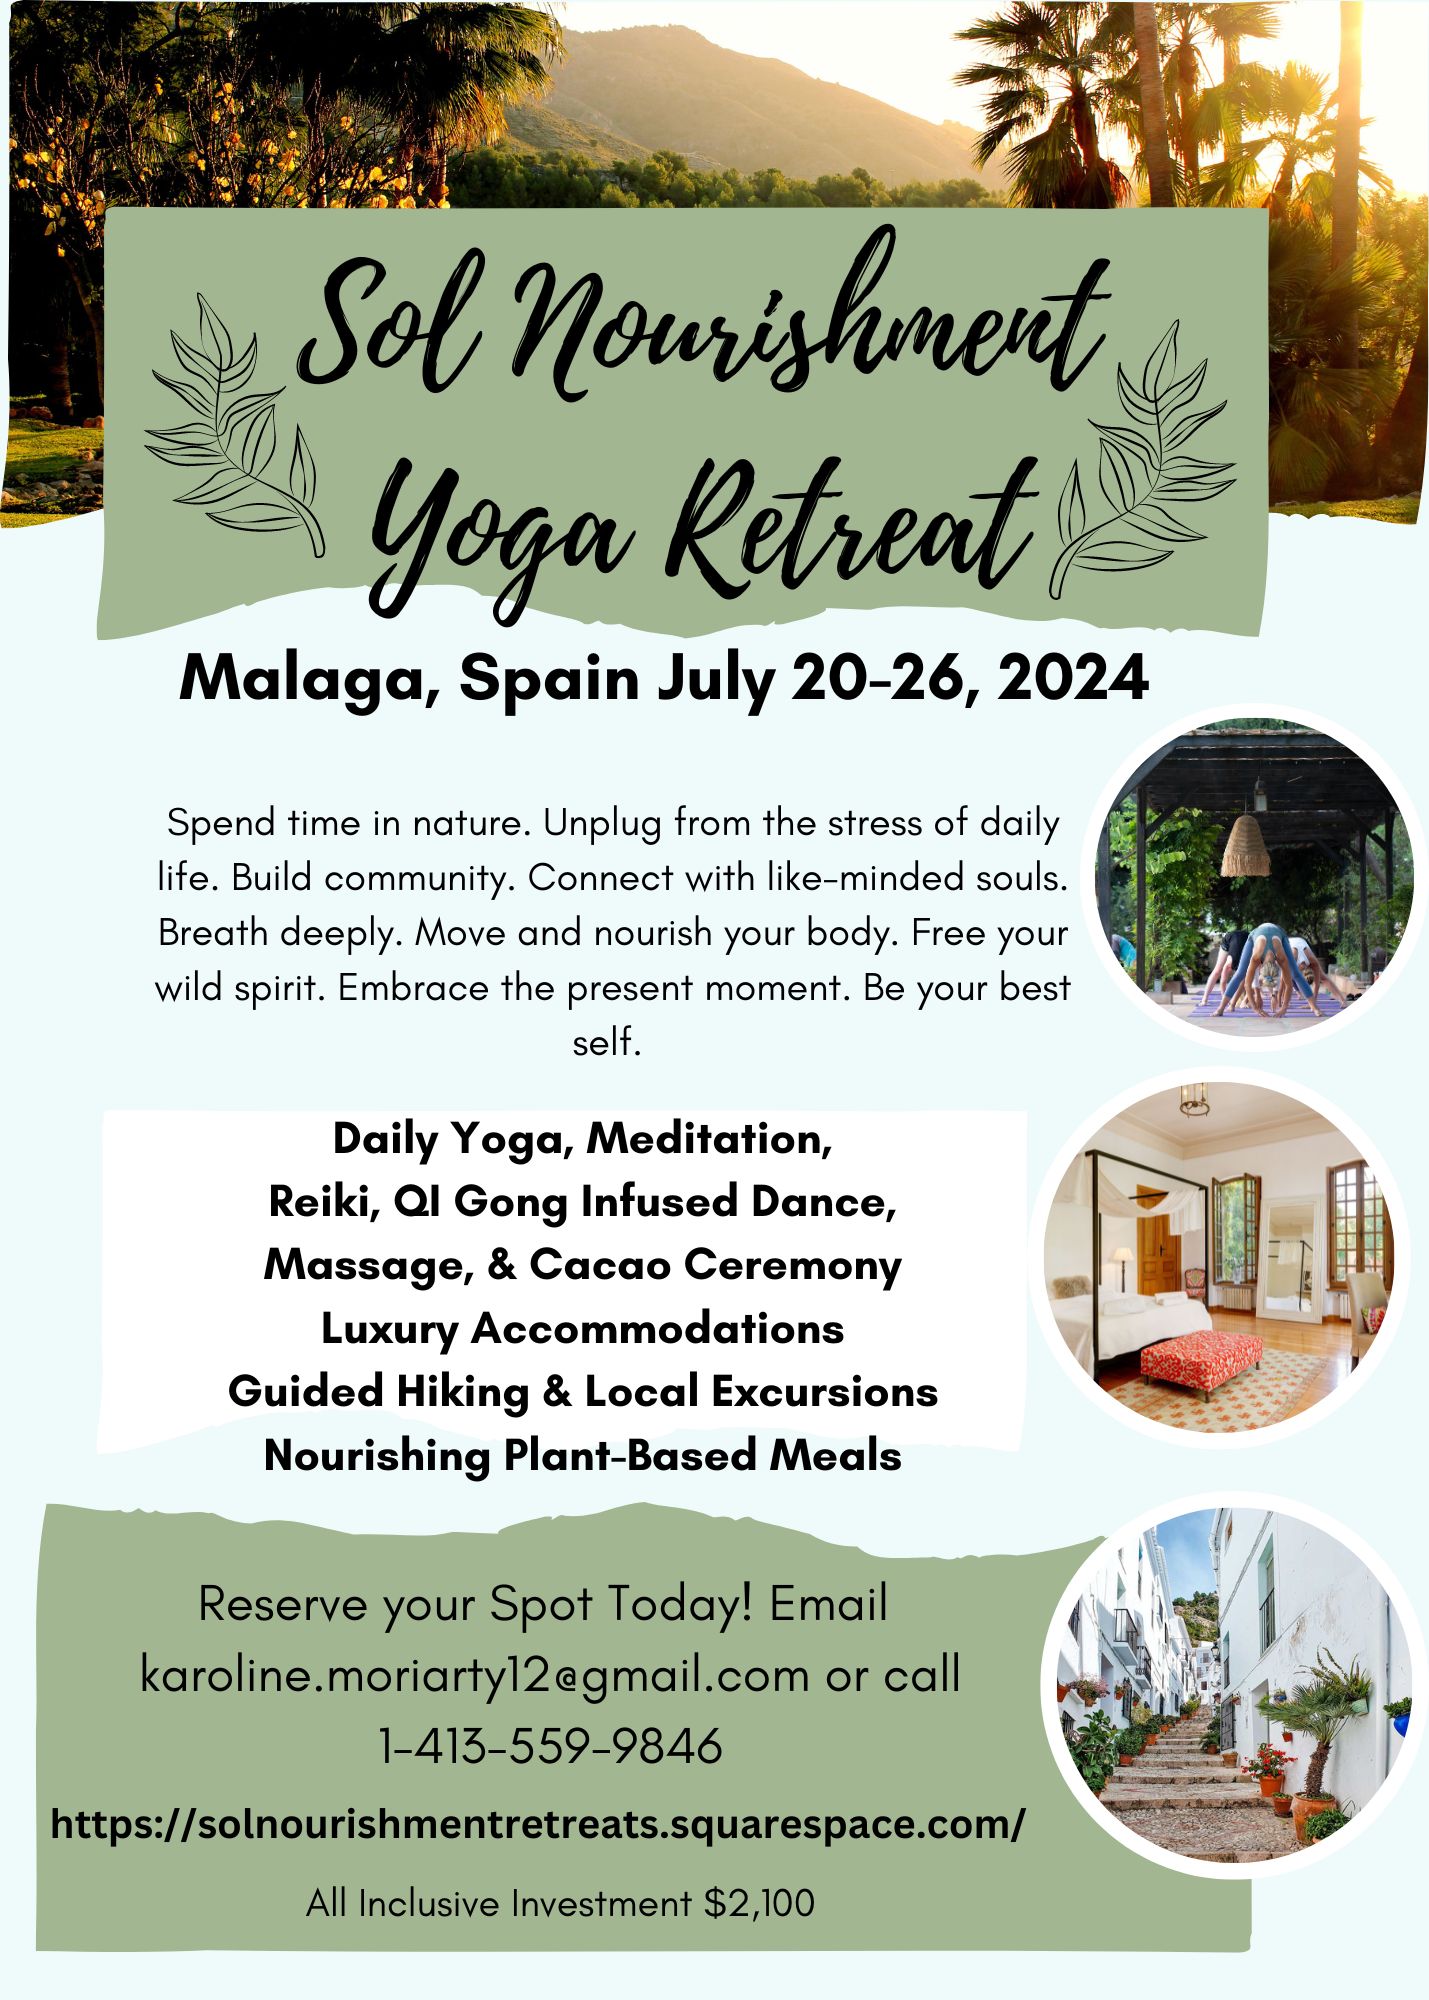 Sol Nourishment All-Inclusive Yoga & Wellness Retreat